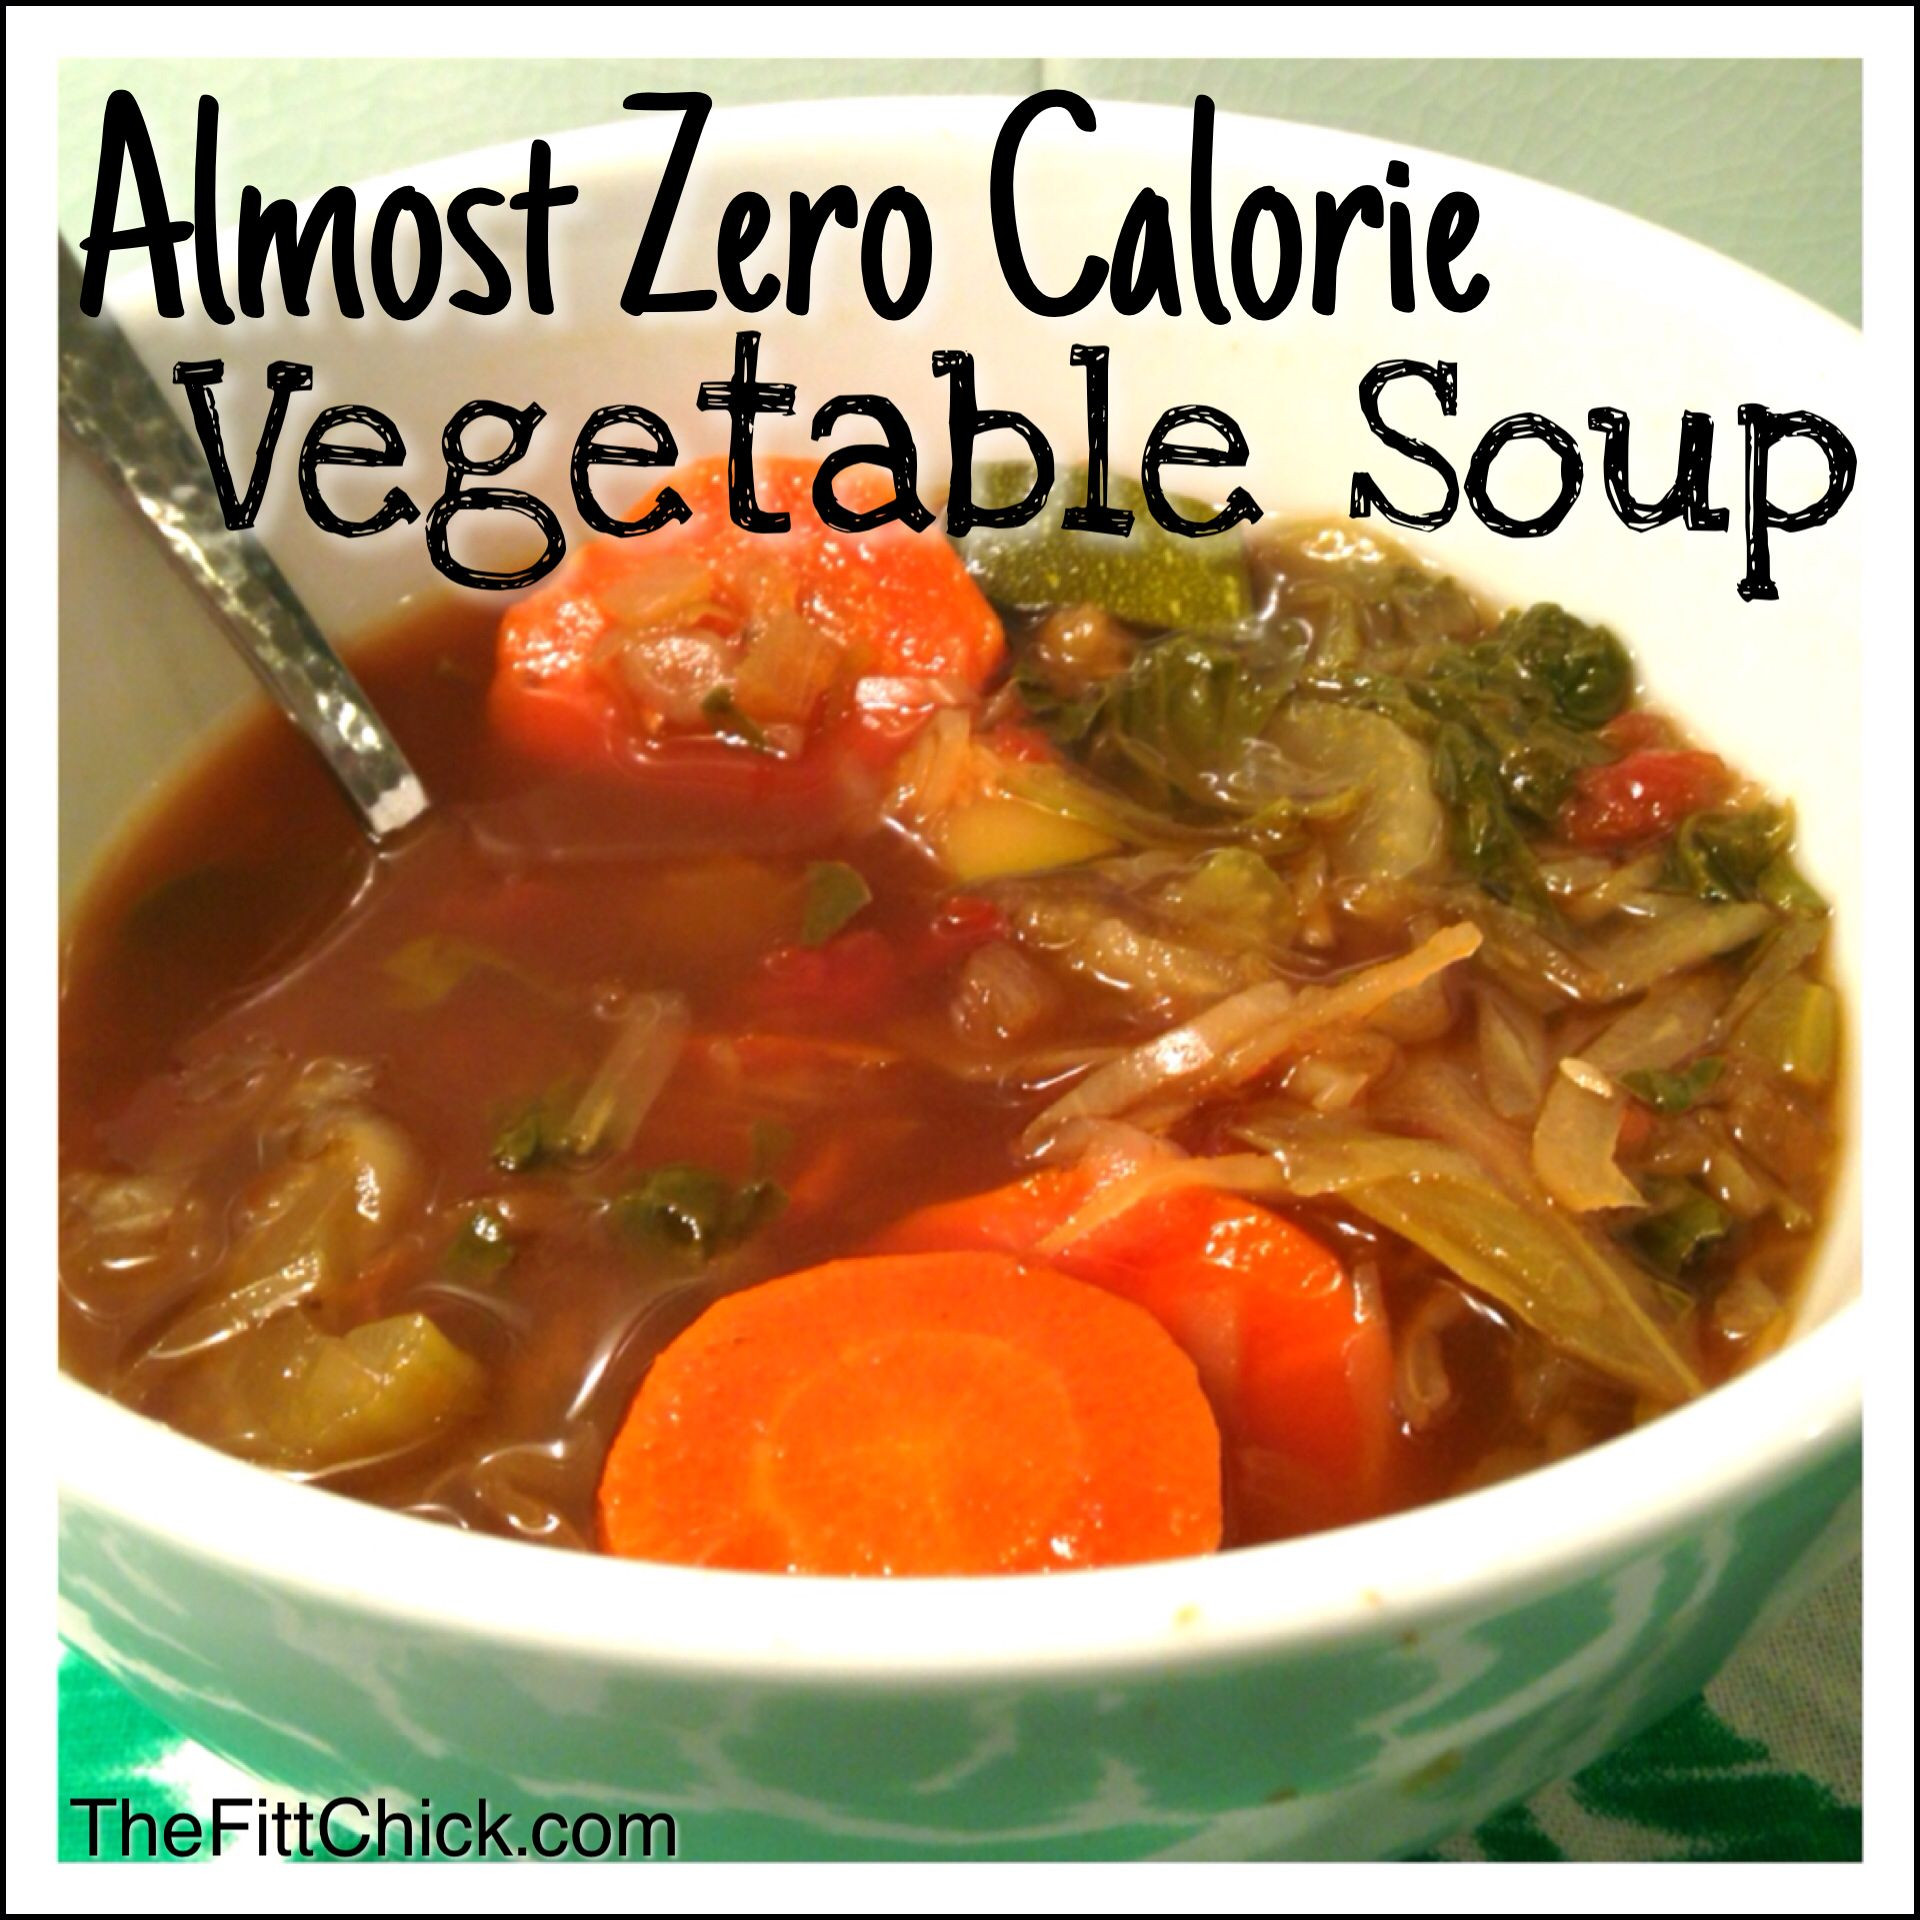 Low Calorie Soup Recipes
 The 25 best Low calorie ve able soup ideas on Pinterest